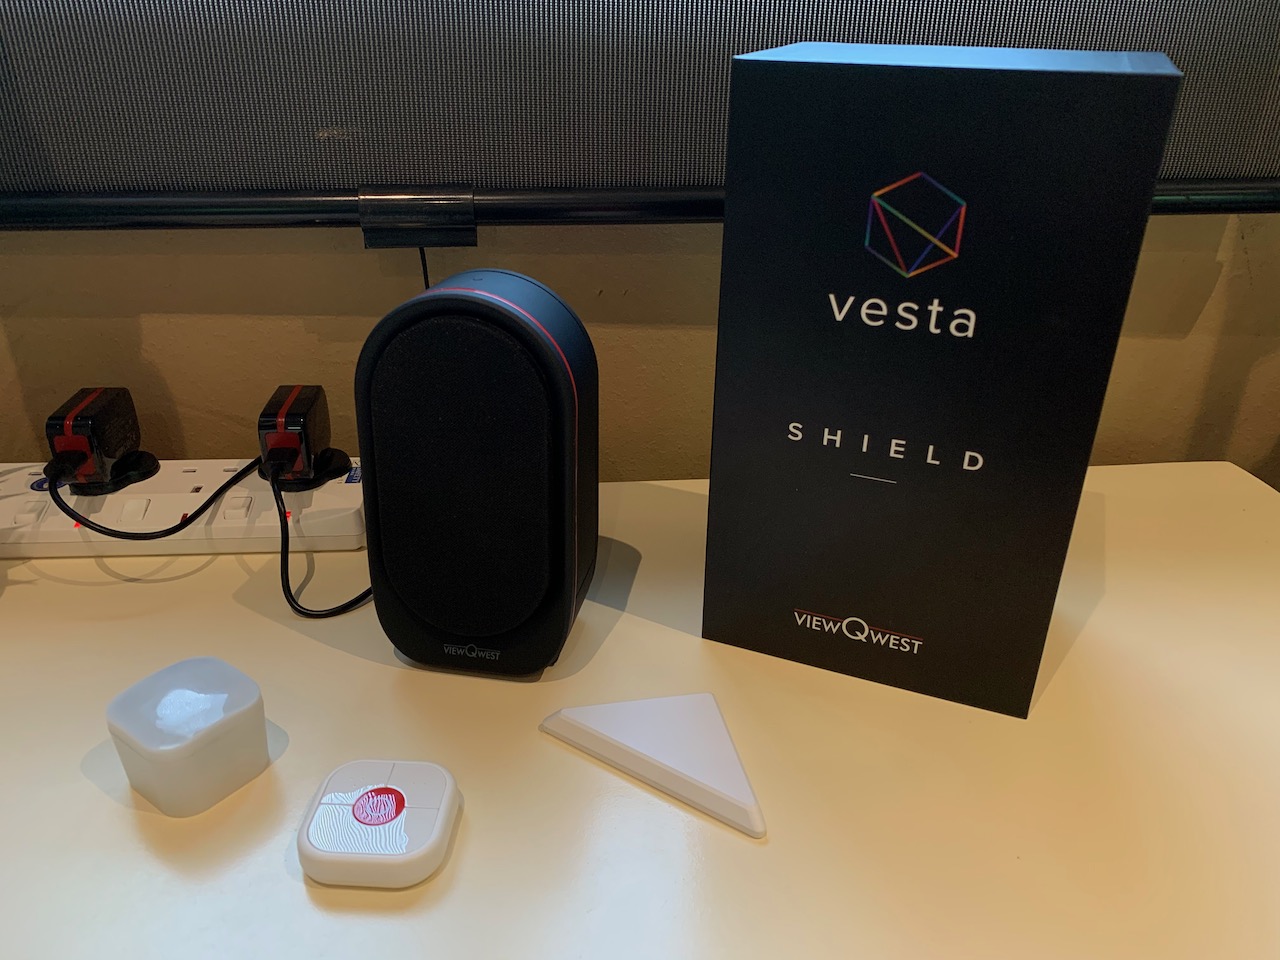 ViewQwest launched Vesta, smart living platform